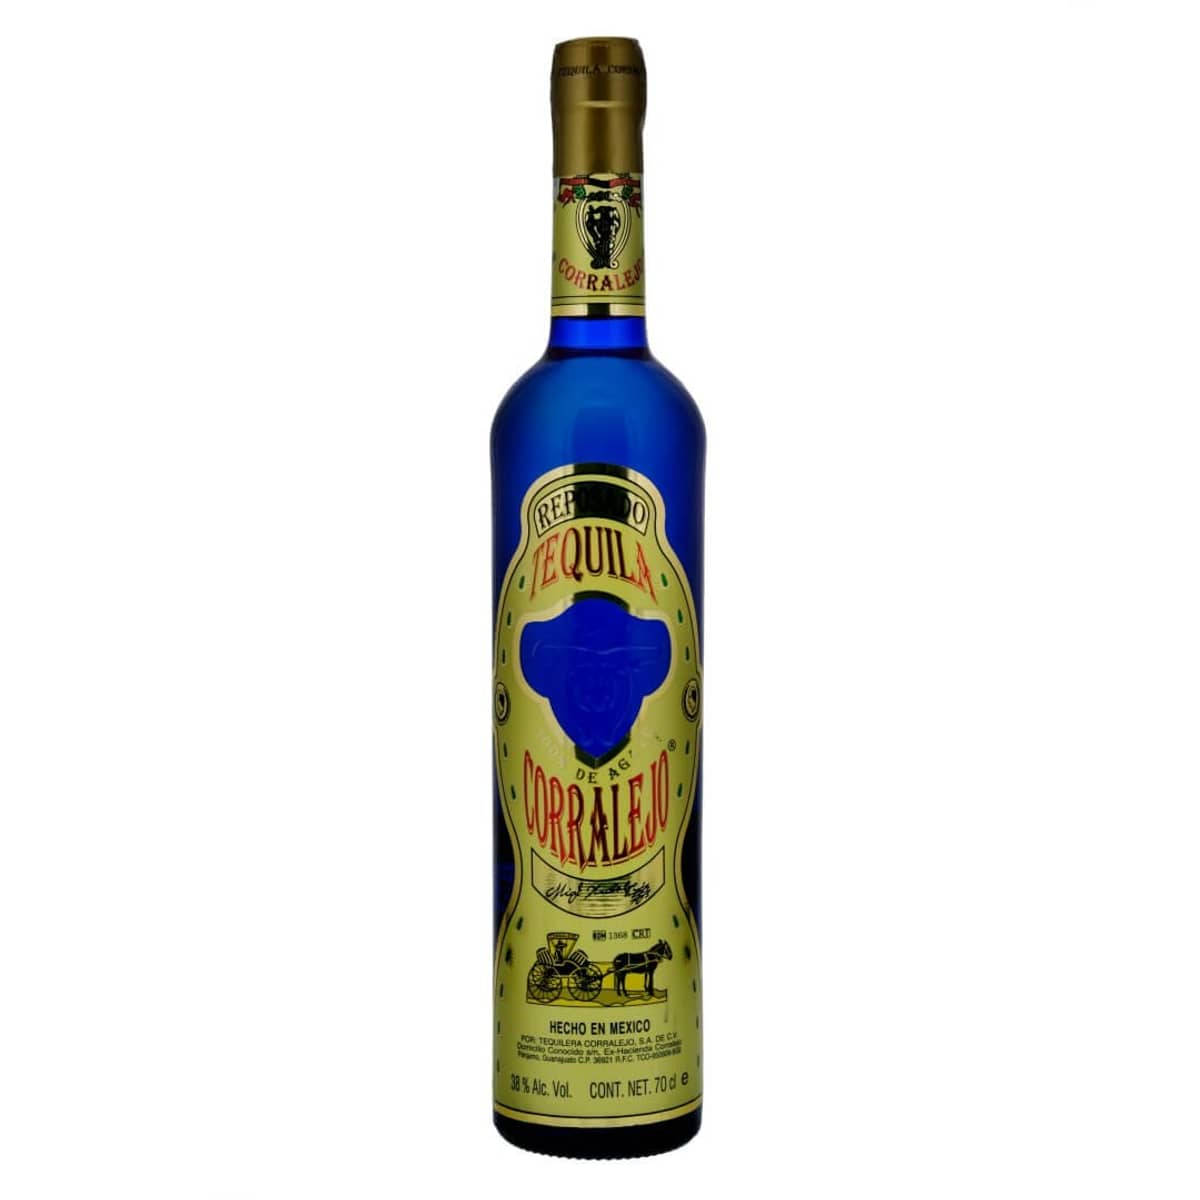 Download Corralejo Tequila Reposado Blue Bottle Wallpaper | Wallpapers.com